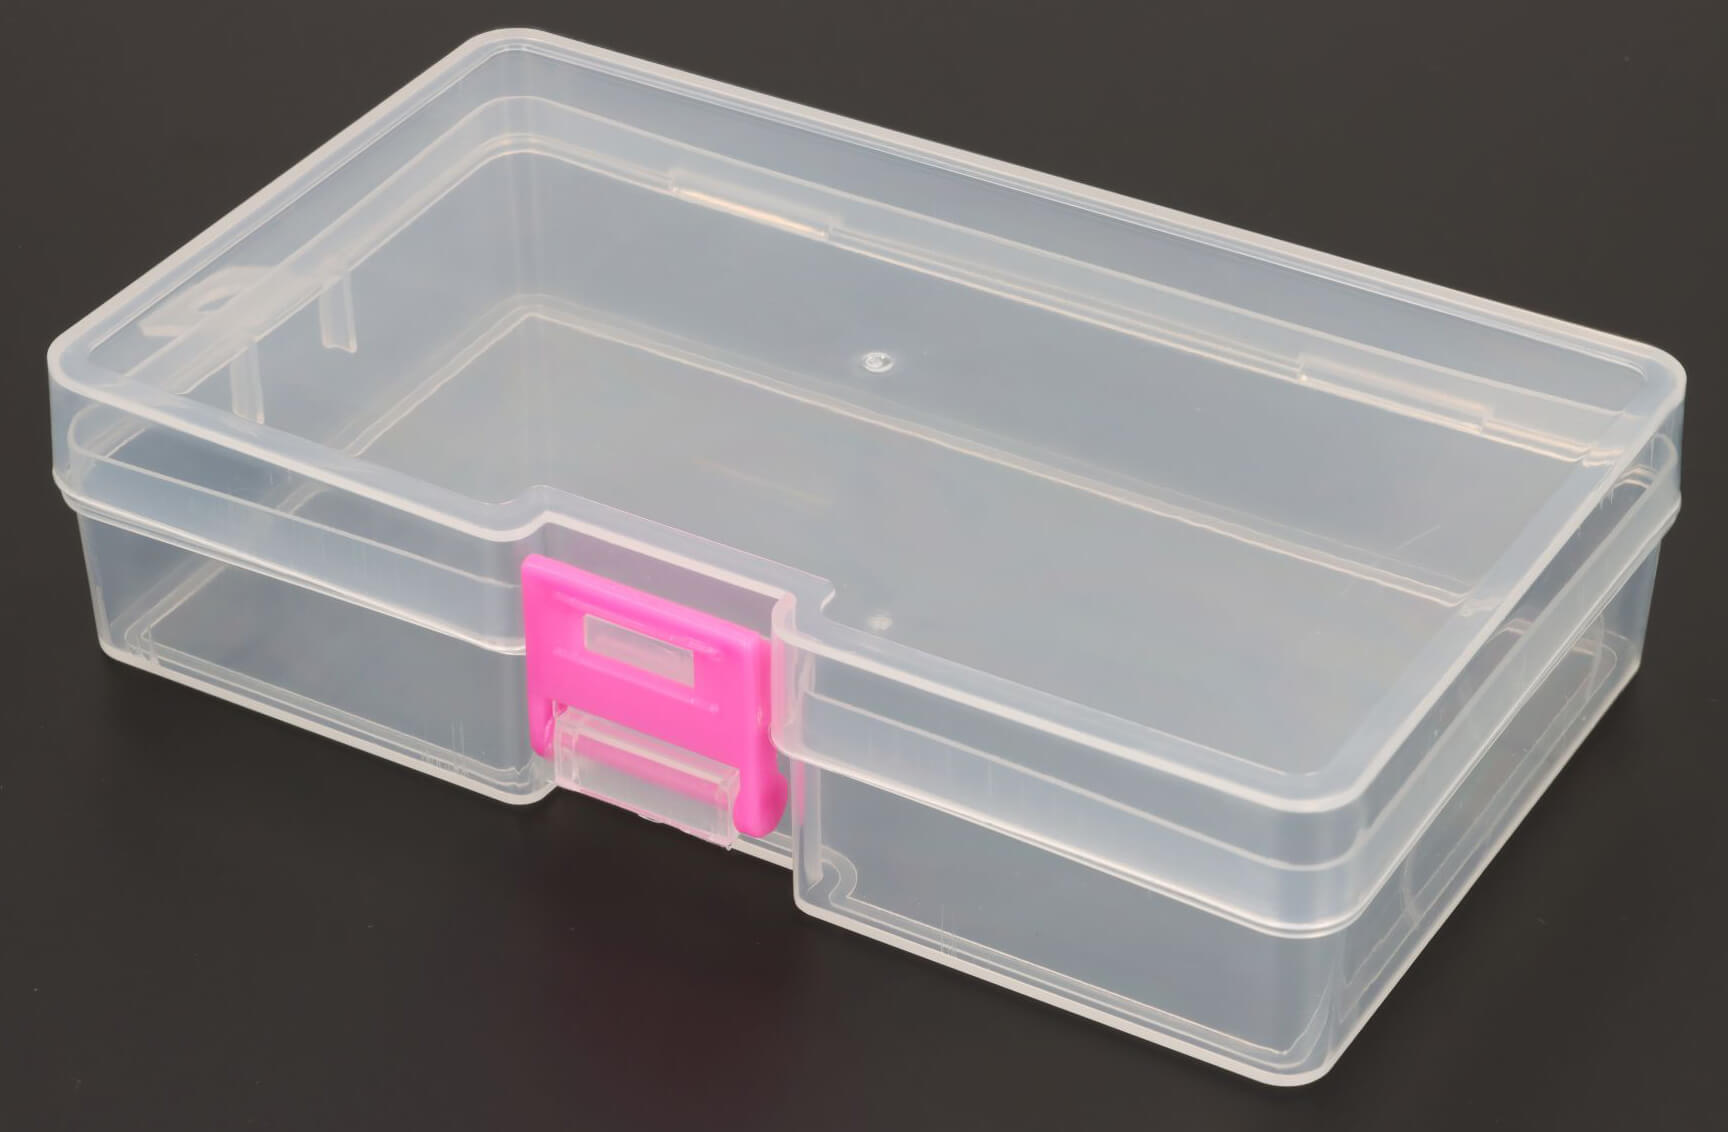 Plastic doos met deksel Doos met scharnierend deksel 145mm x 85mm x 35mm PP Polypropyleen Transparant - Clip:Roze - Gatenophanging: 7mm